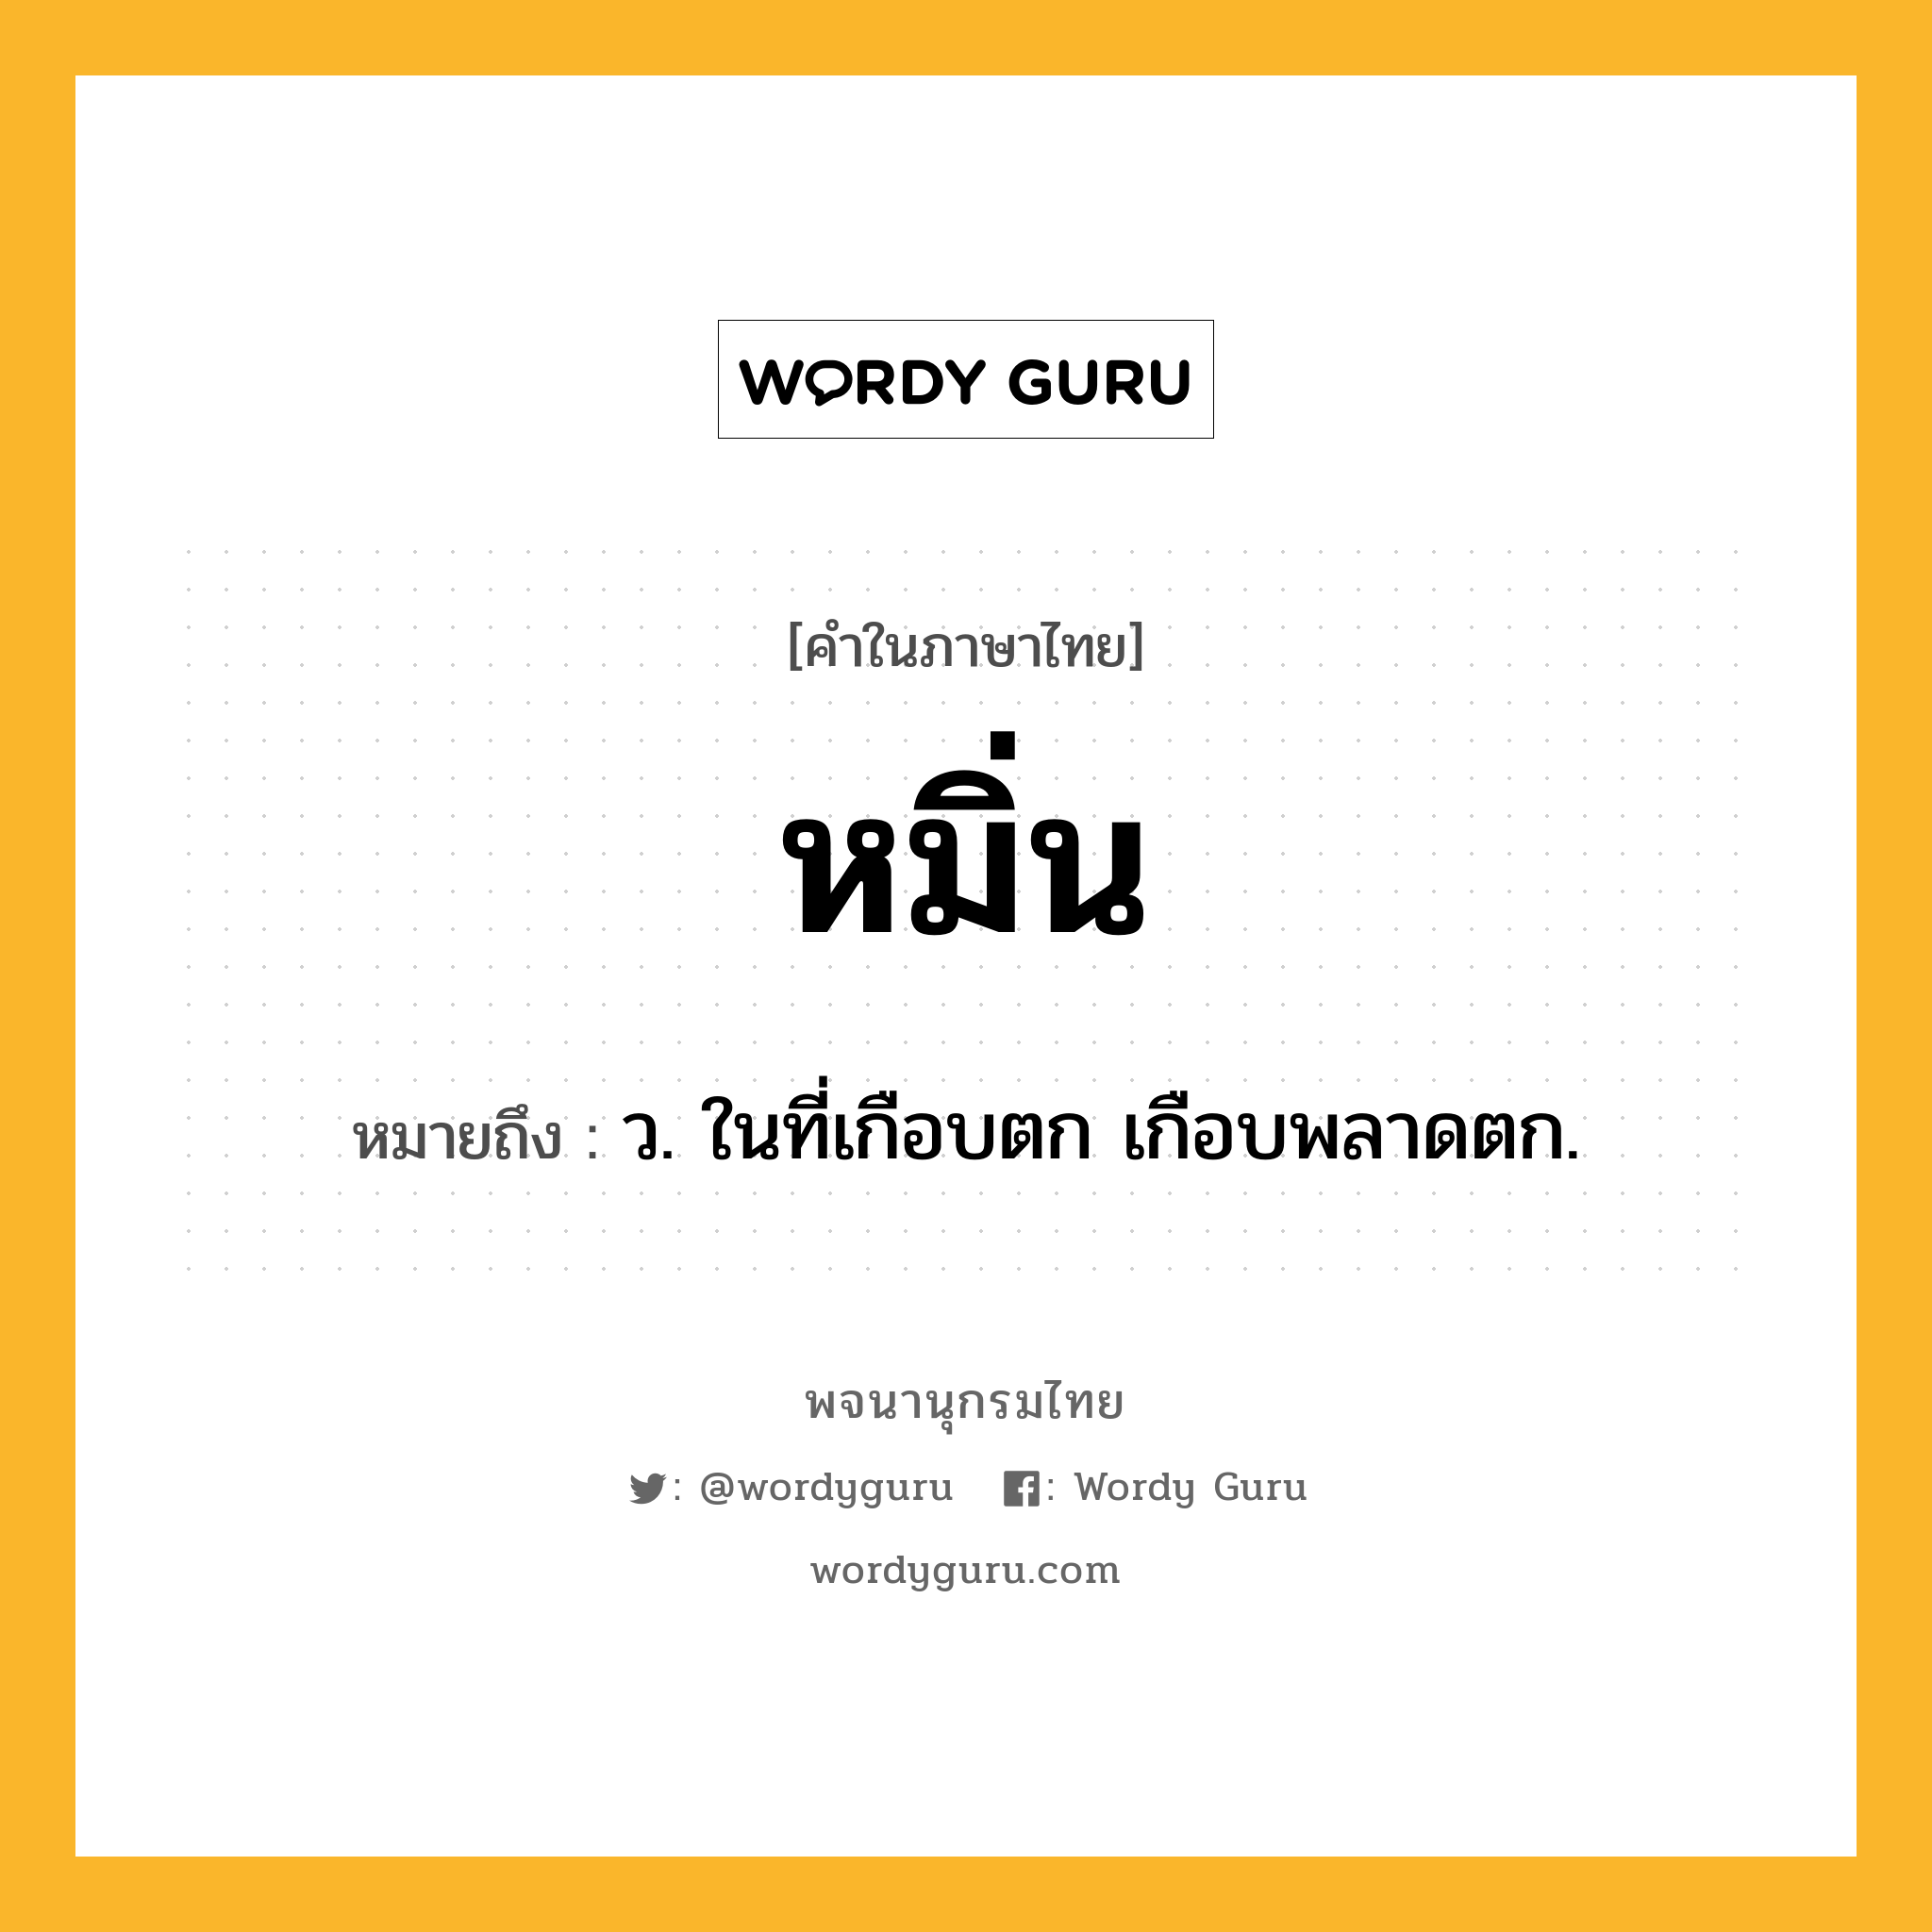 หมิ่น ความหมาย หมายถึงอะไร?, คำในภาษาไทย หมิ่น หมายถึง ว. ในที่เกือบตก เกือบพลาดตก.